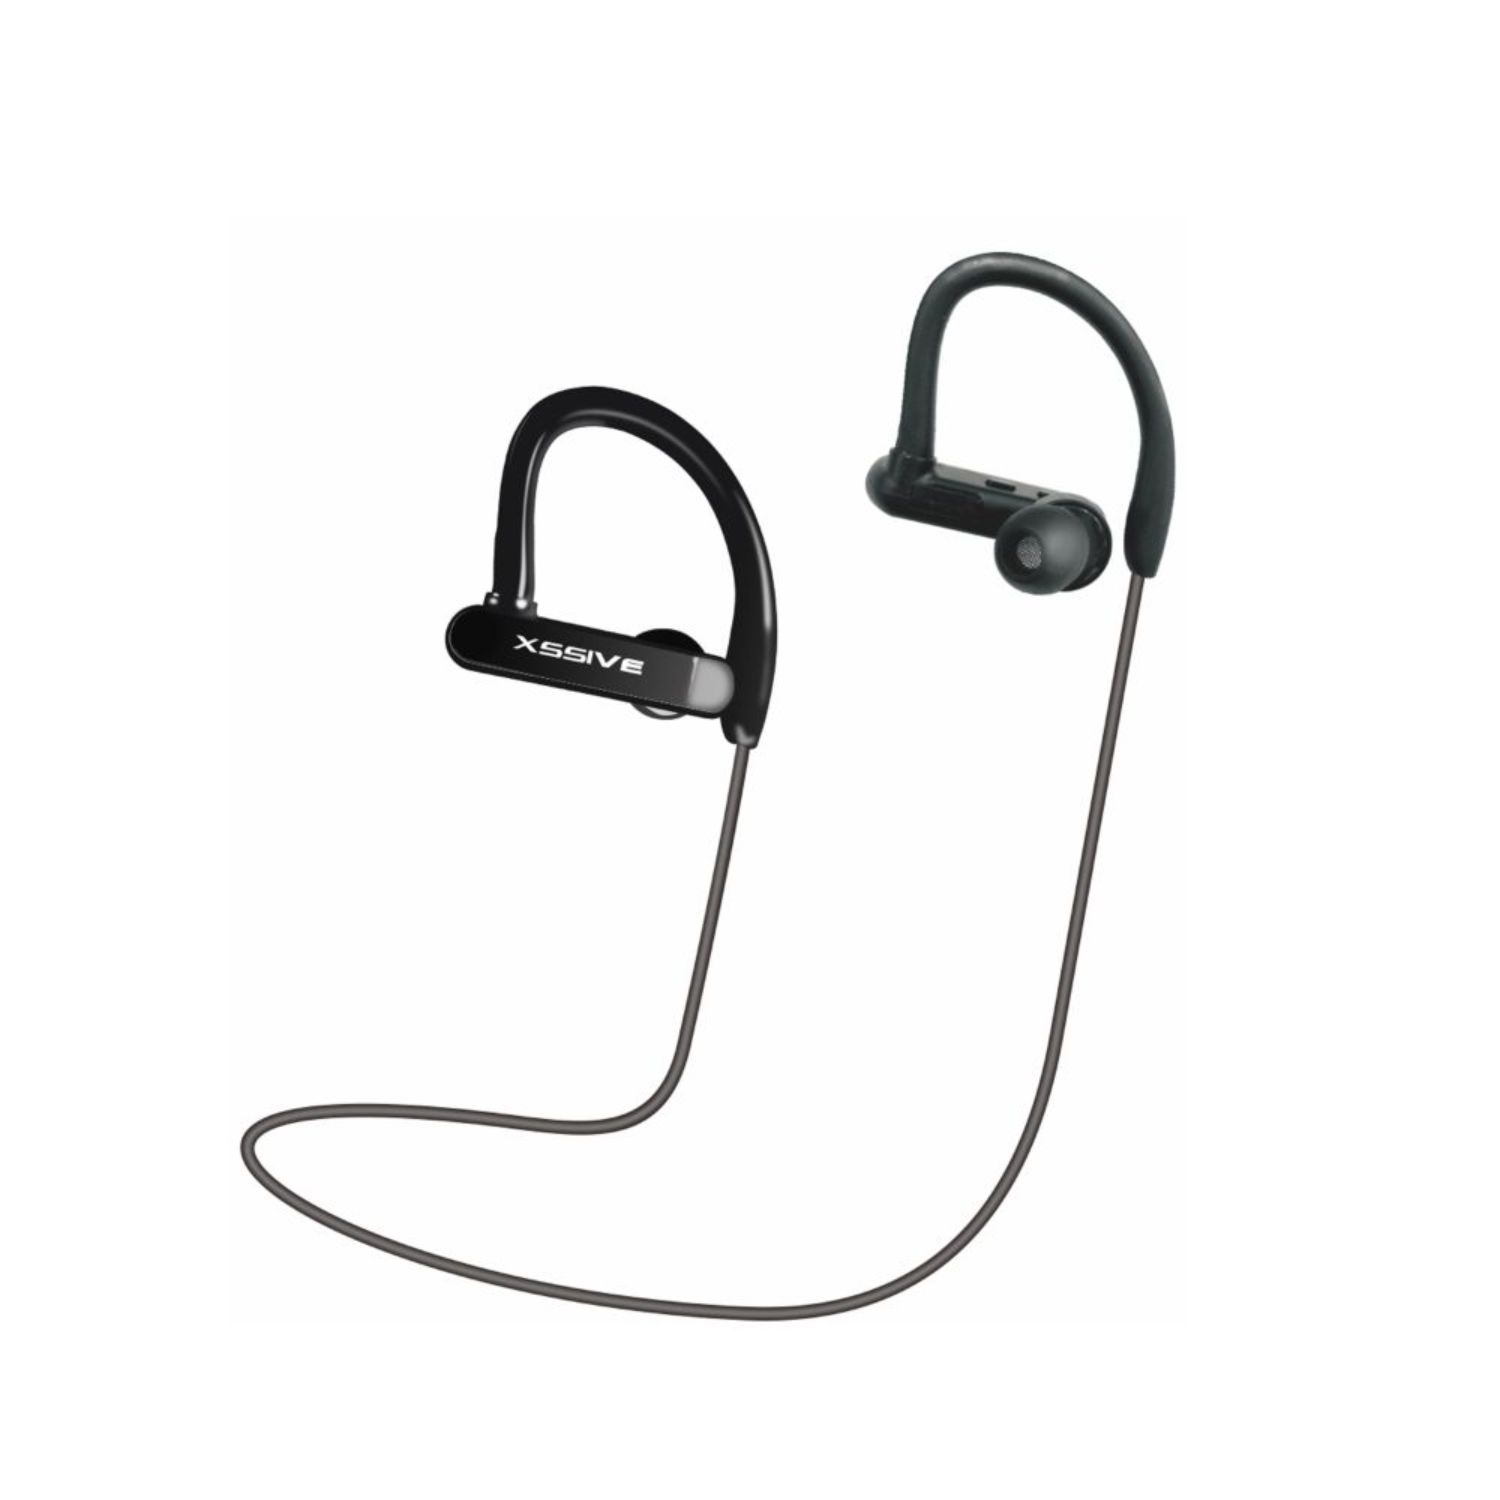 Schwarz Headset BT06, COFI In-ear